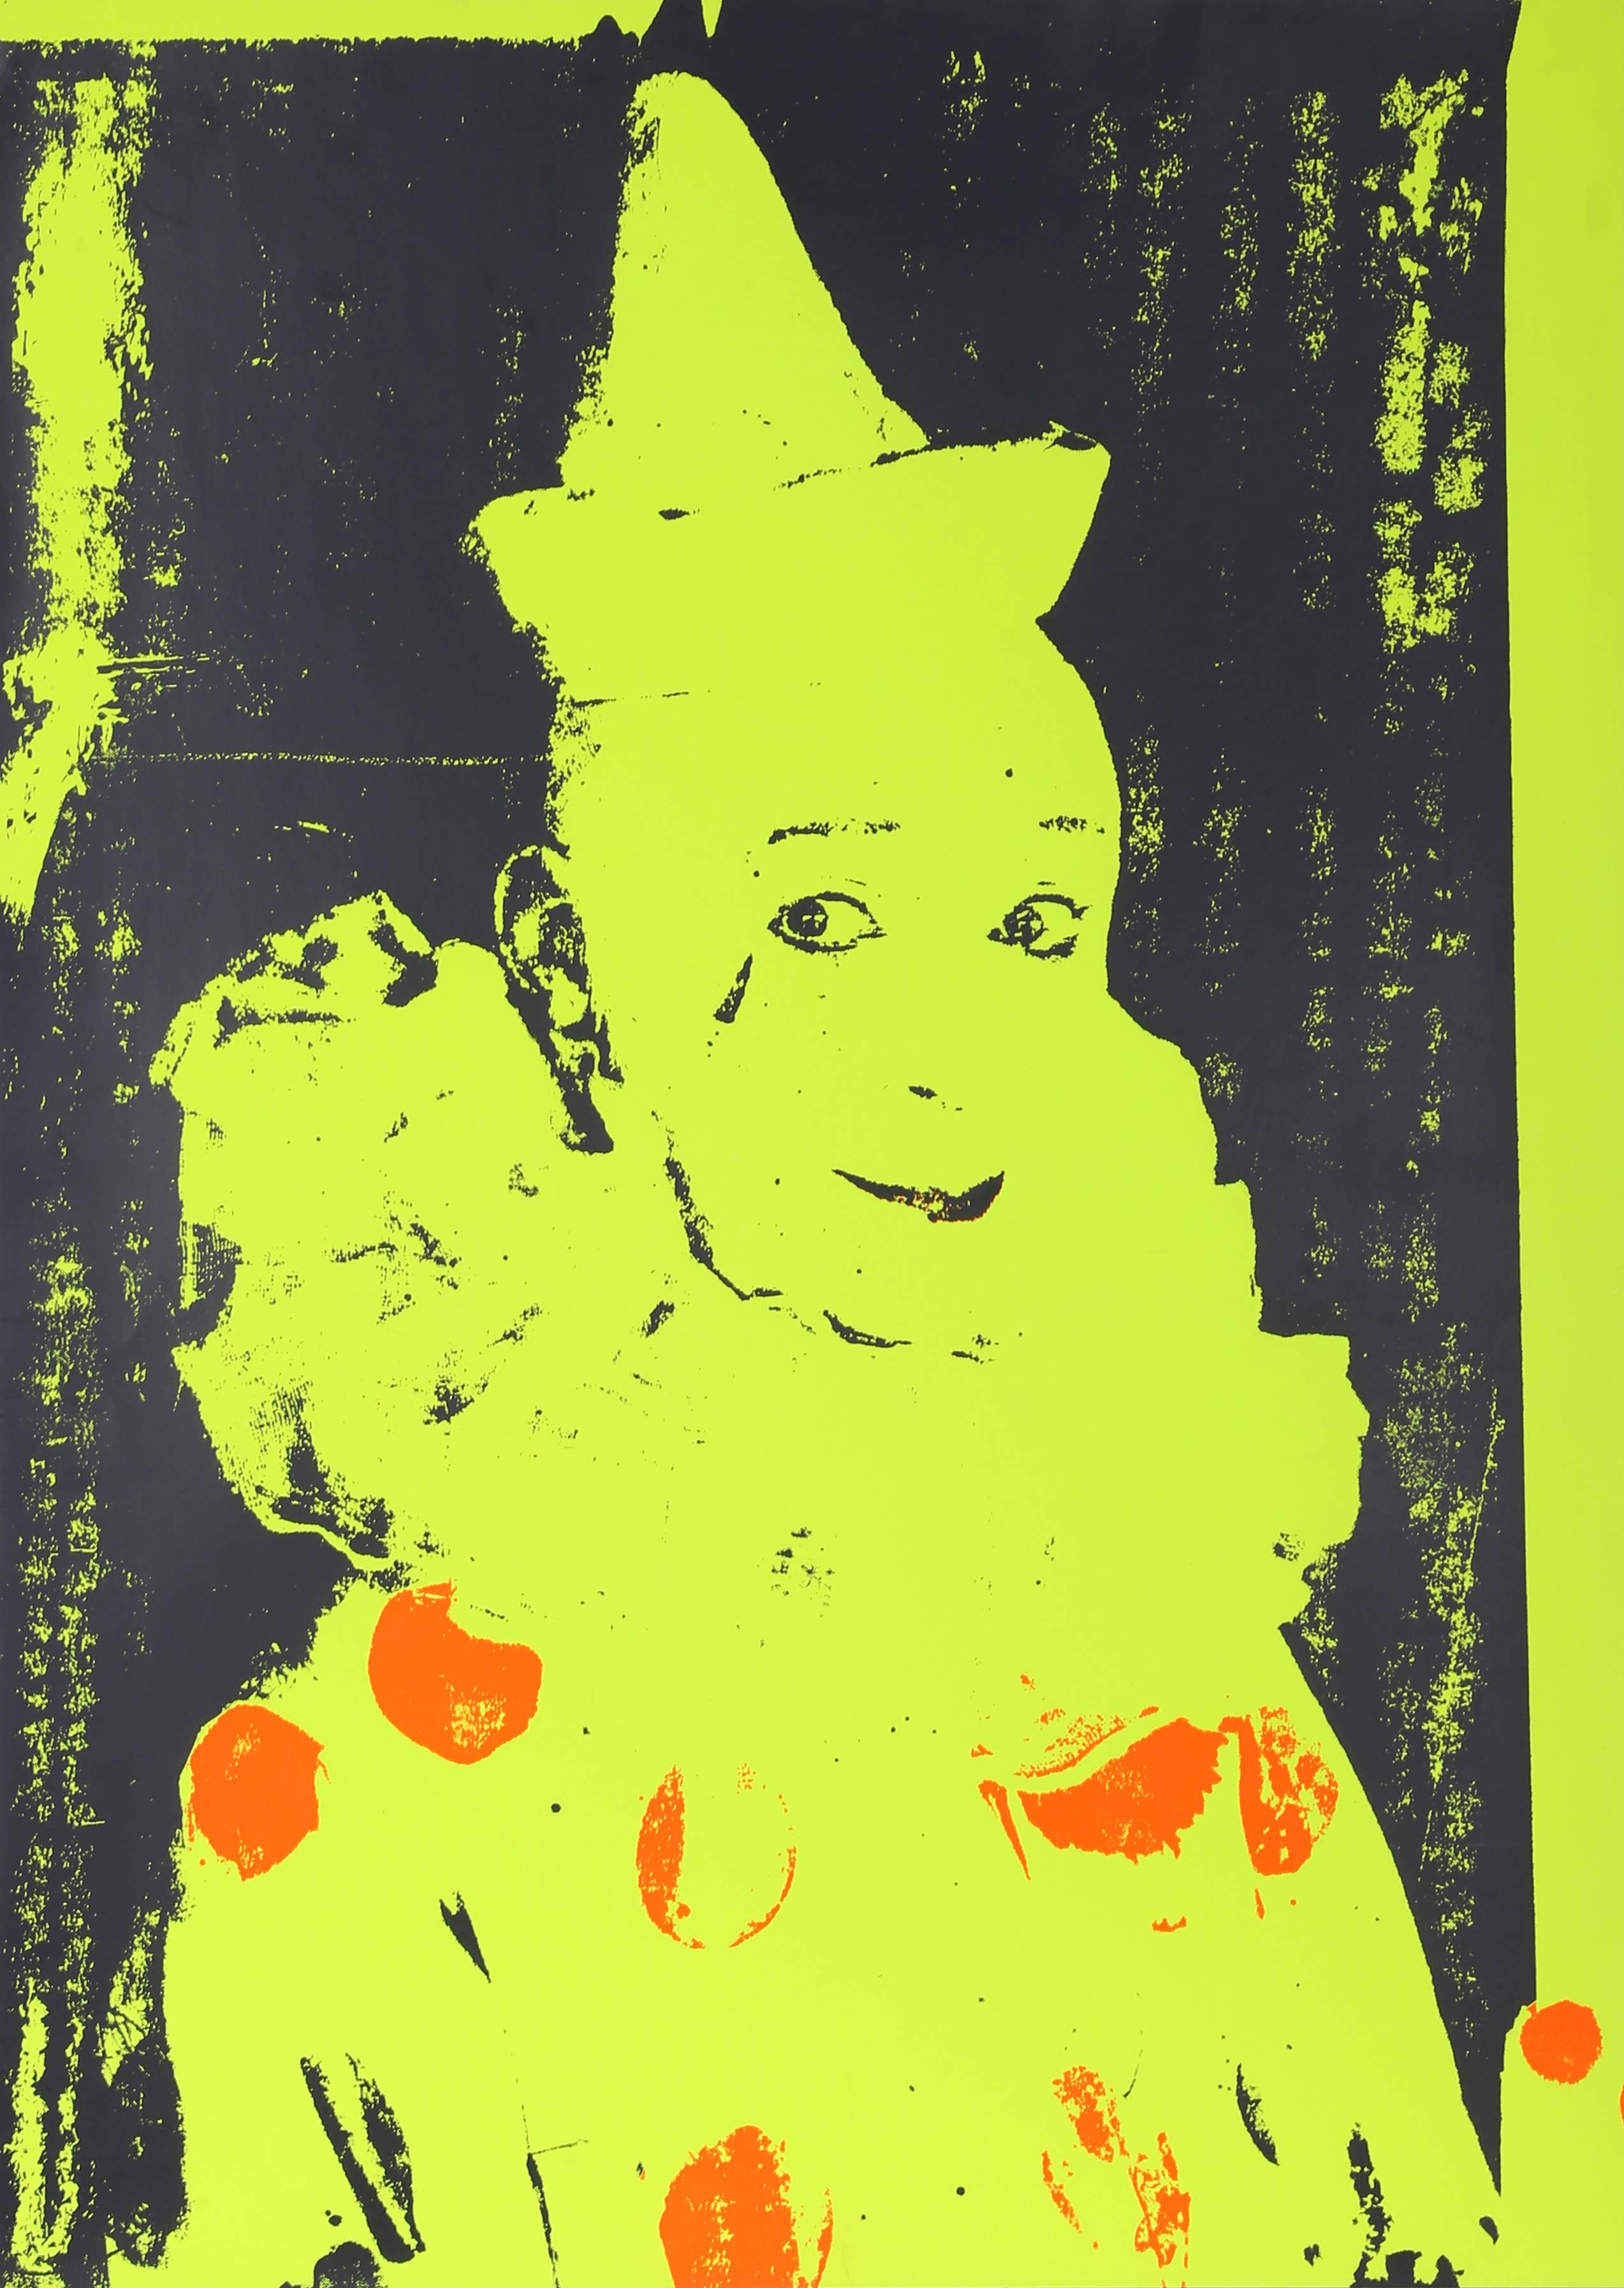 Artiste : Ford Beckman, américain (1952 - 2014)
Titre : Neon Clown (vert et orange)
Année : 1994
Médium : Sérigraphie, signé au verso
Edition : AP
Taille : 34 x 24,5 in. (86,36 x 62,23 cm)